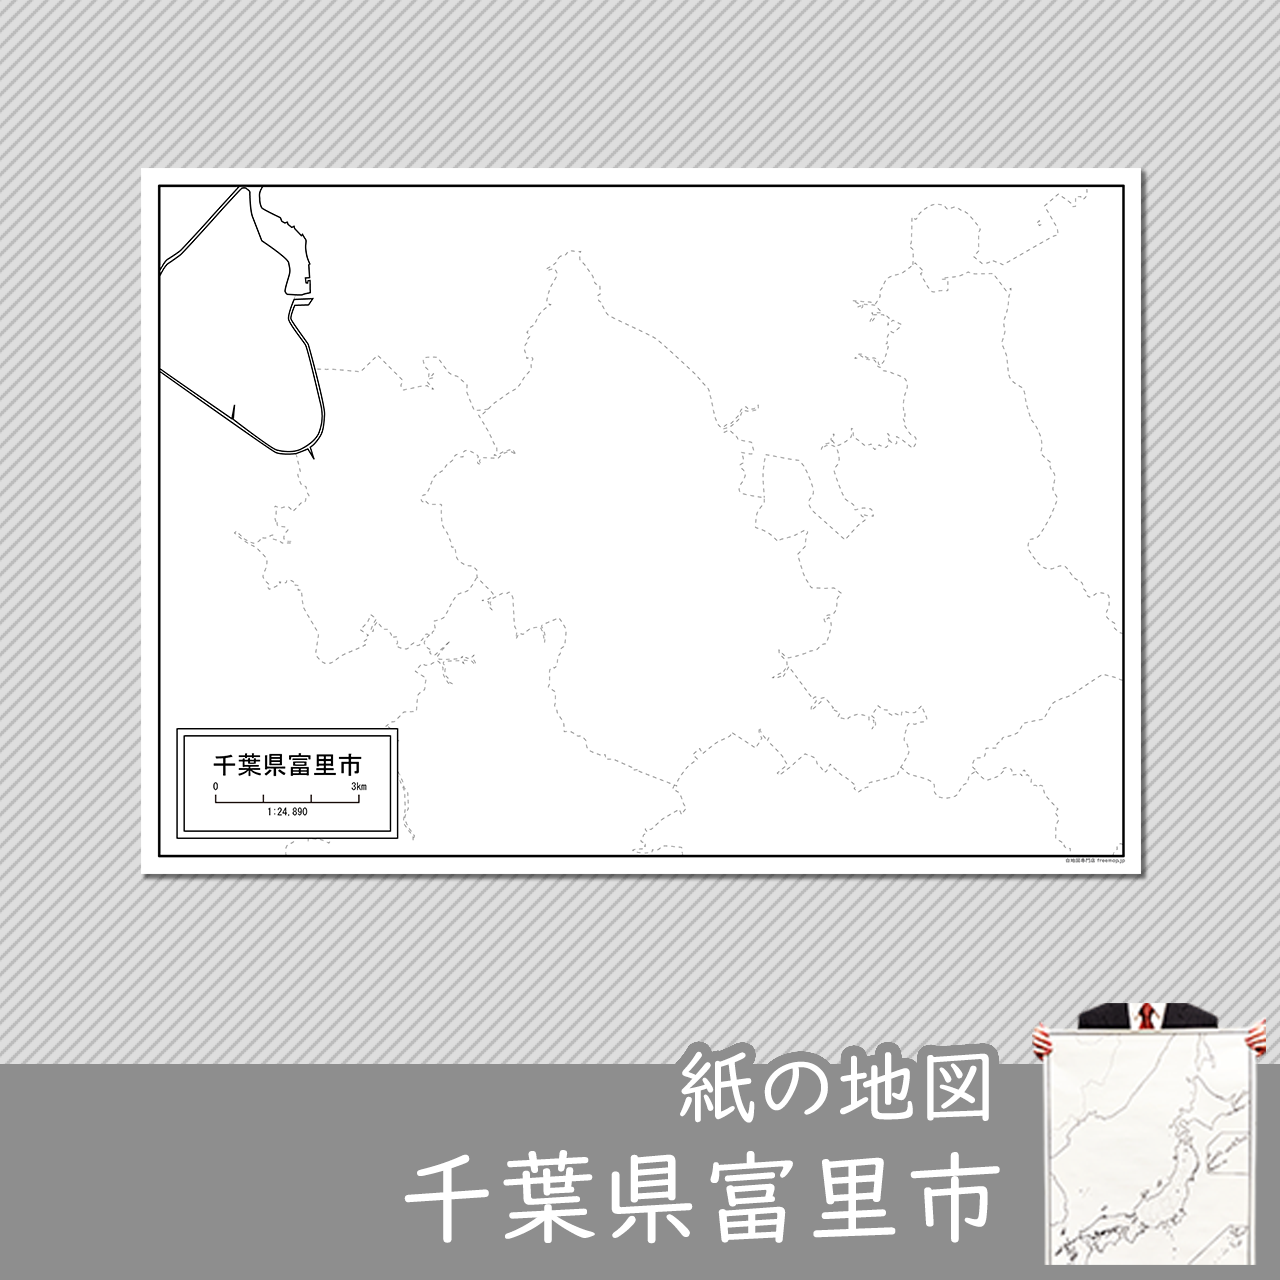 富里市の紙の白地図のサムネイル